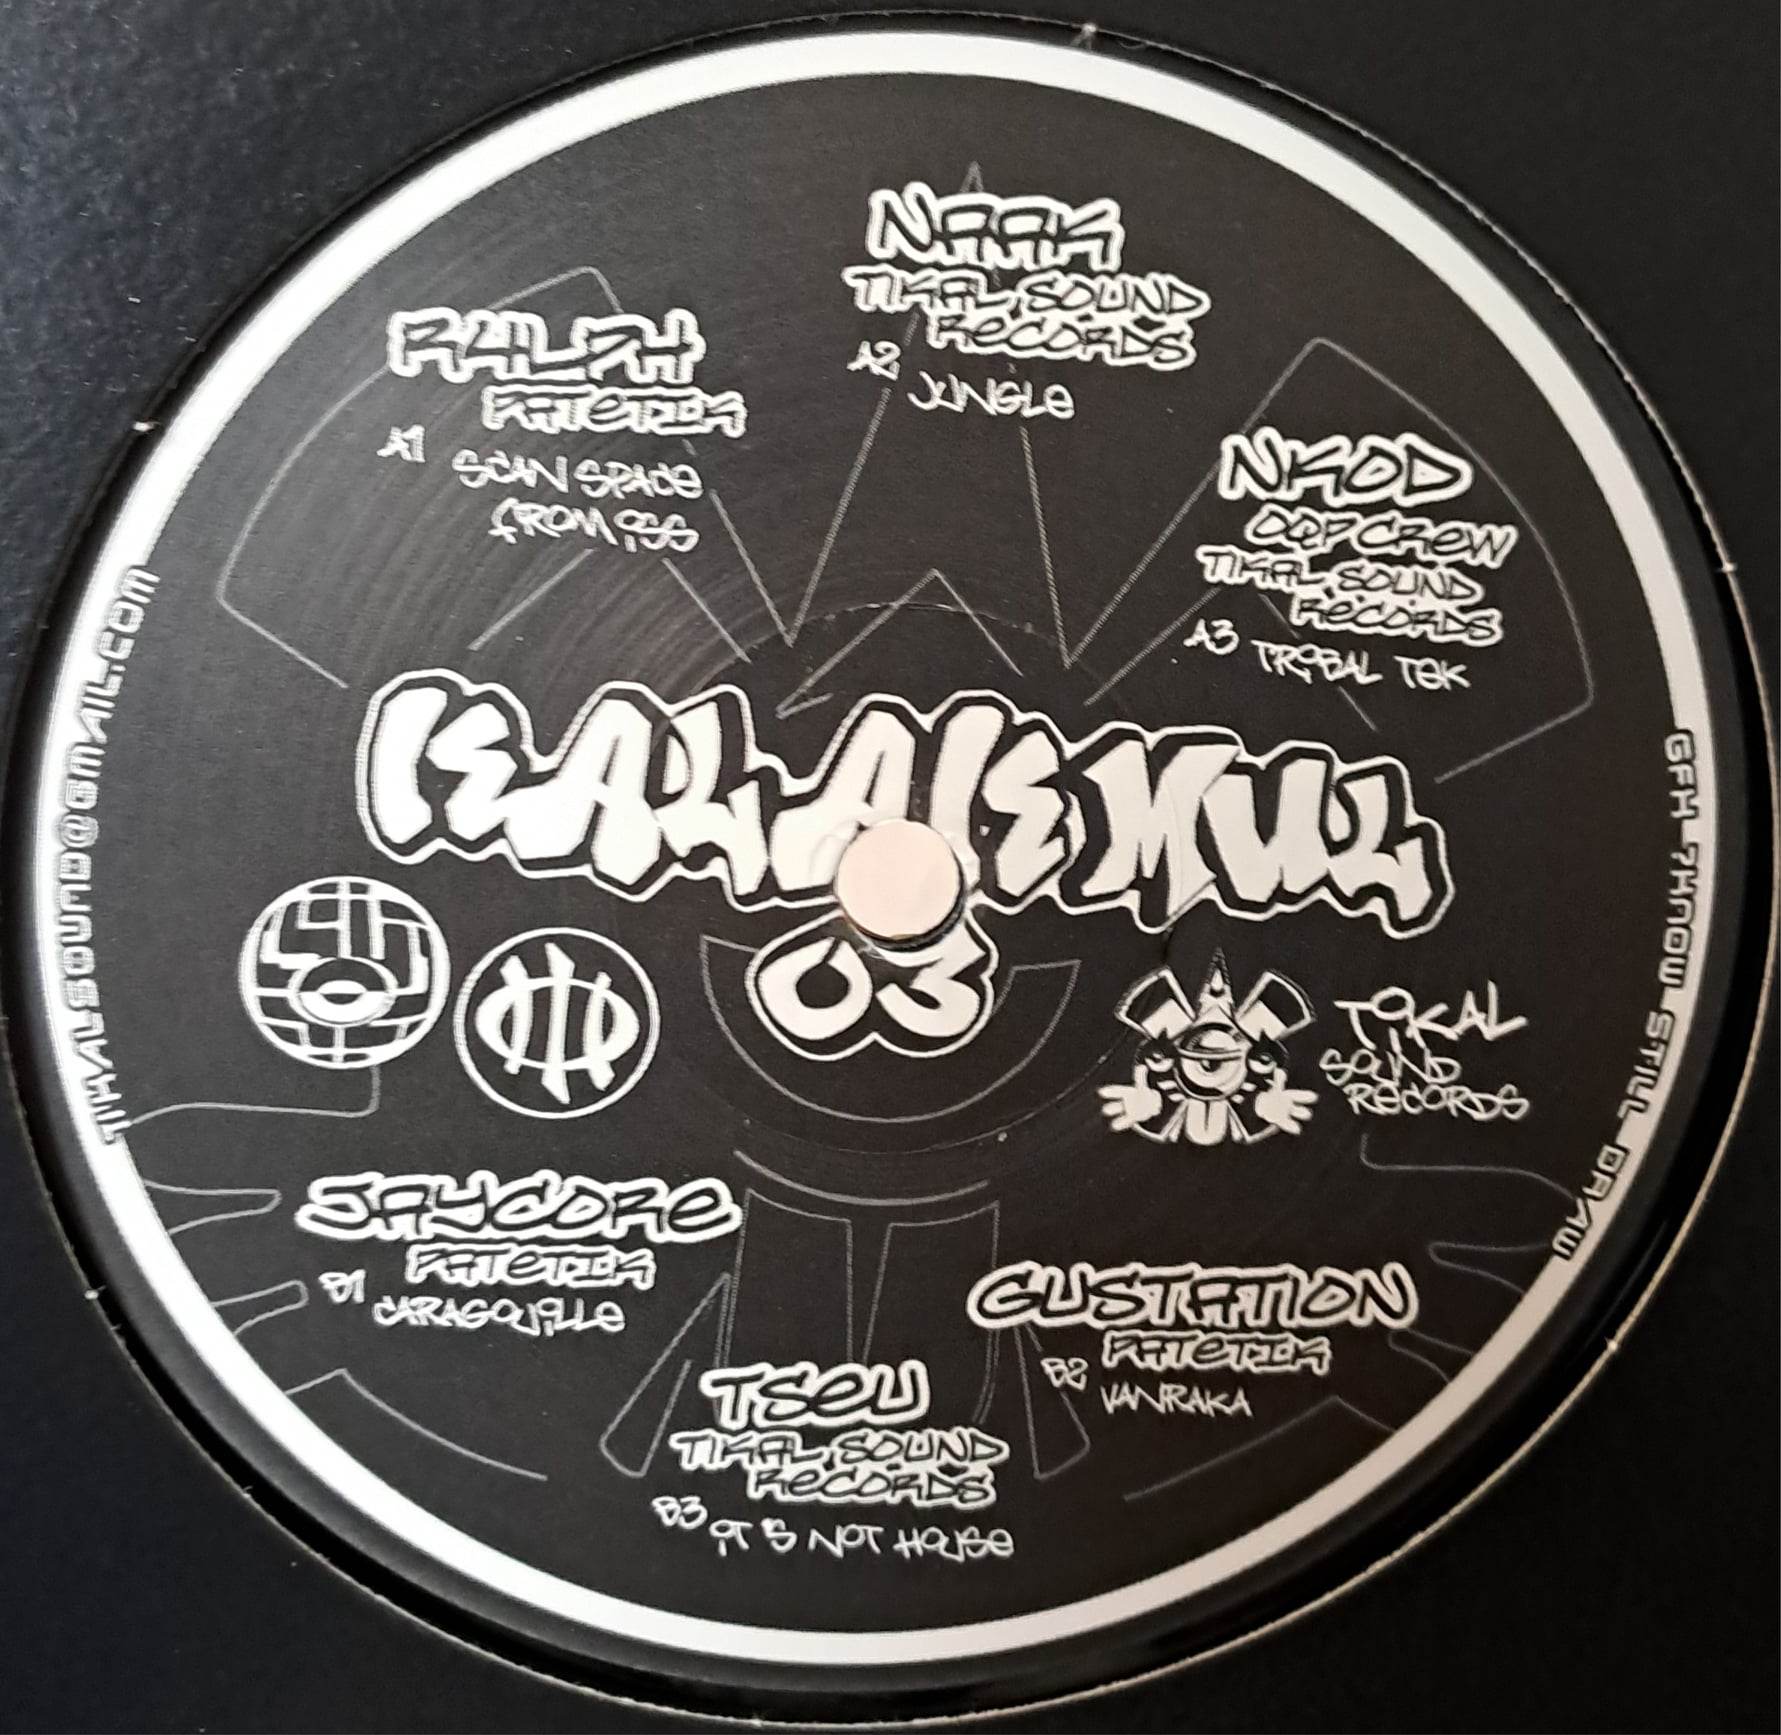 Kalakmul 03 (toute dernière copie en stock) - vinyle freetekno